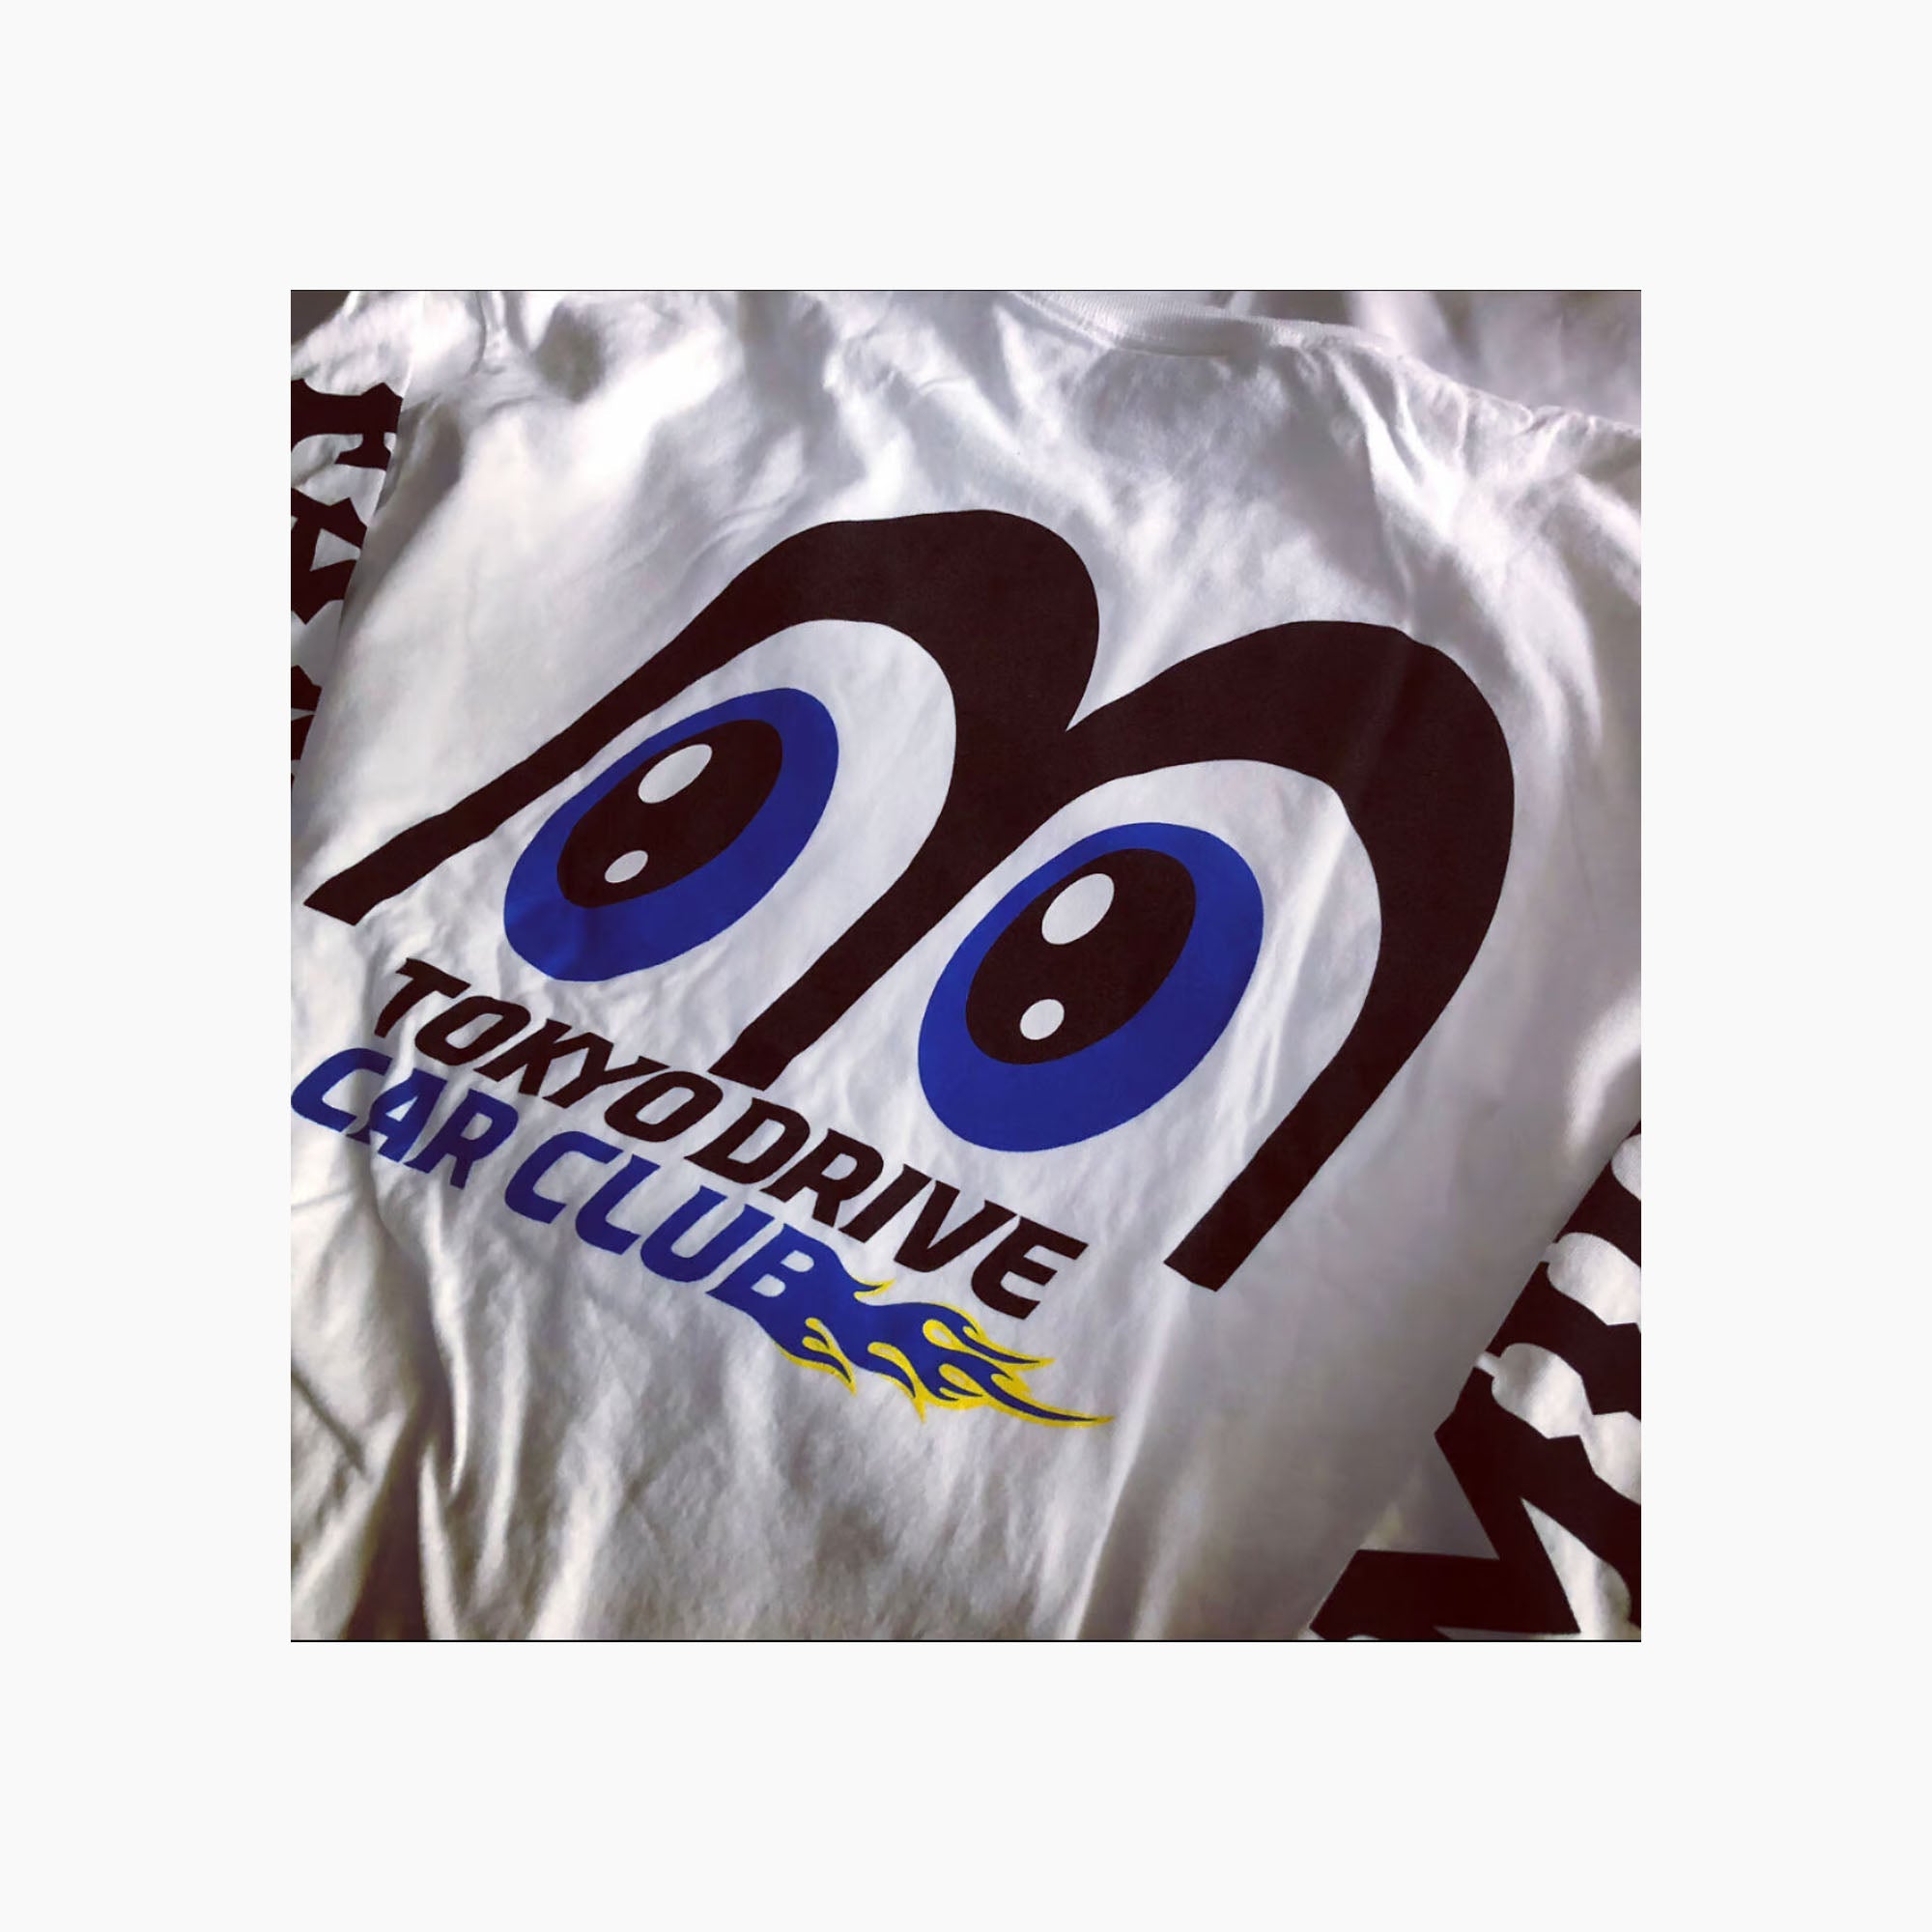 Tokyo Drive Car Club